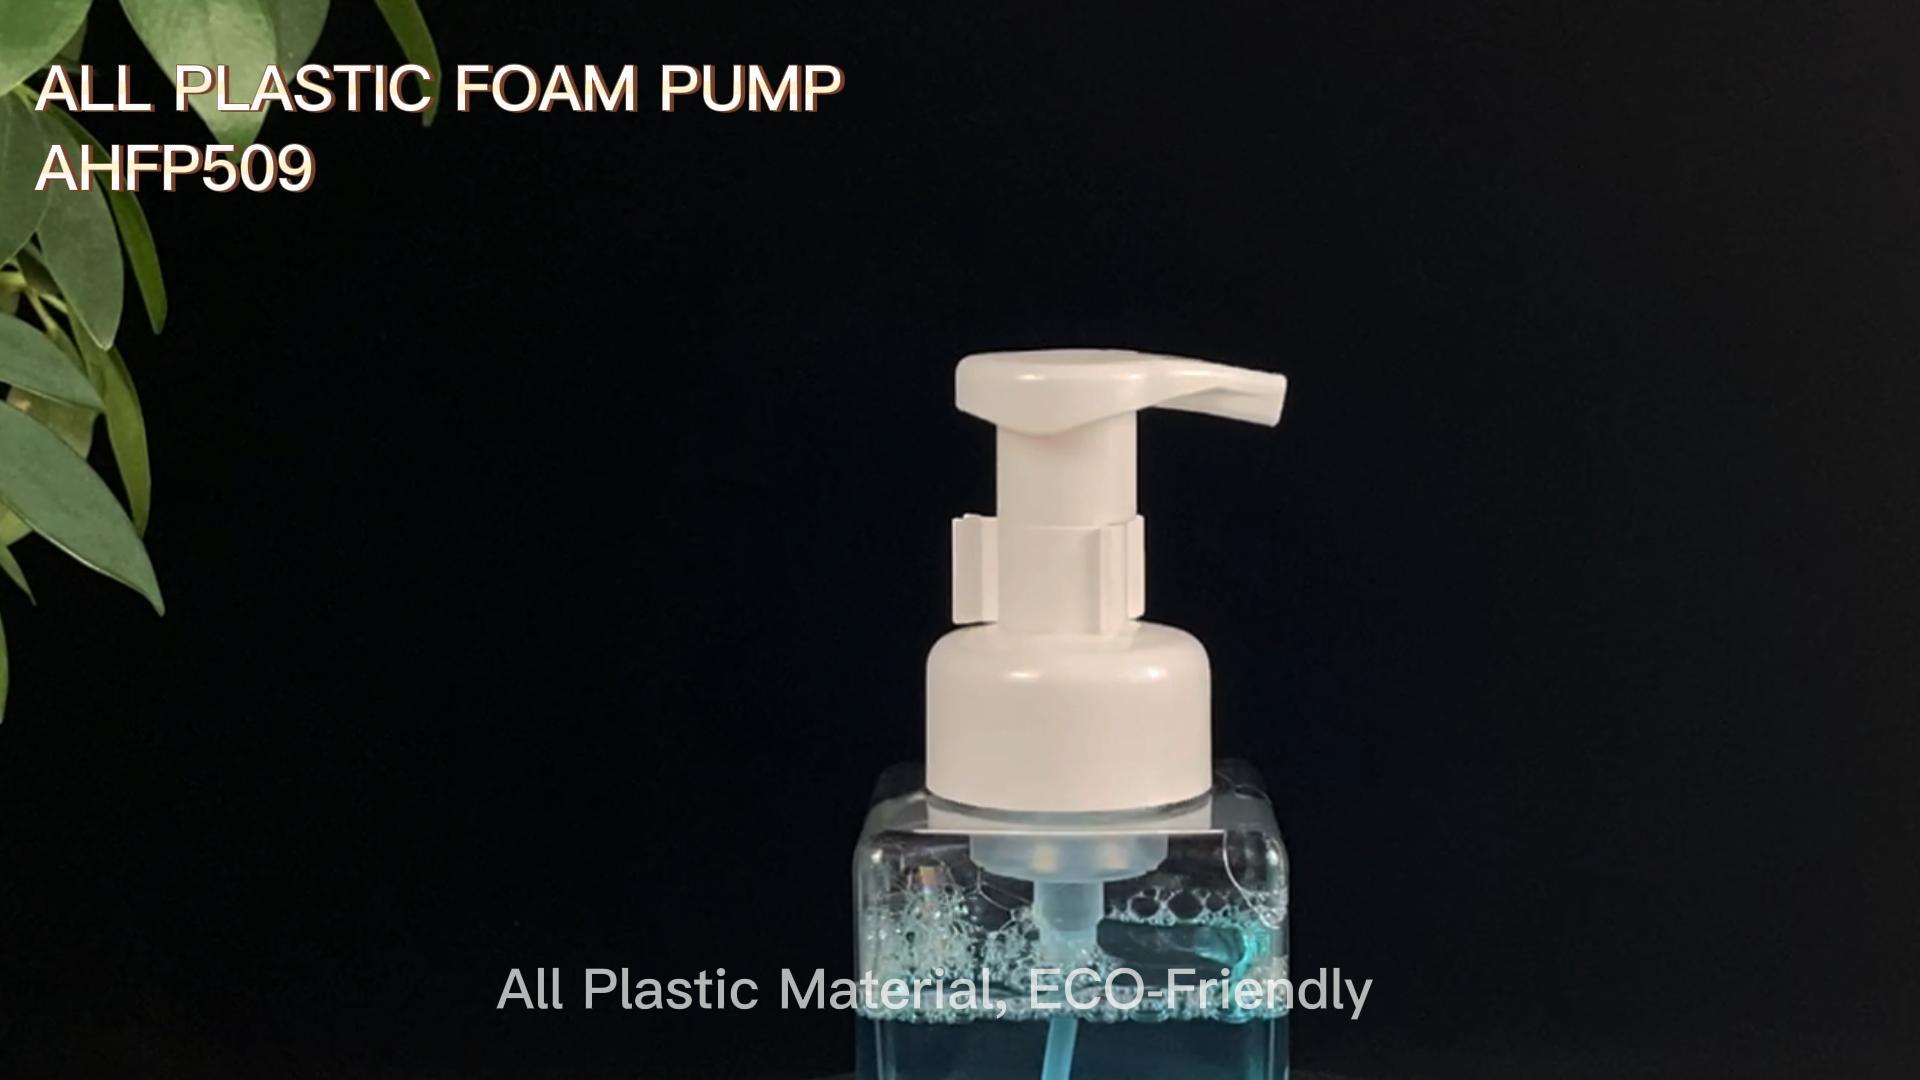 ALL PLASTIC FOAM PUMP - AHFP509